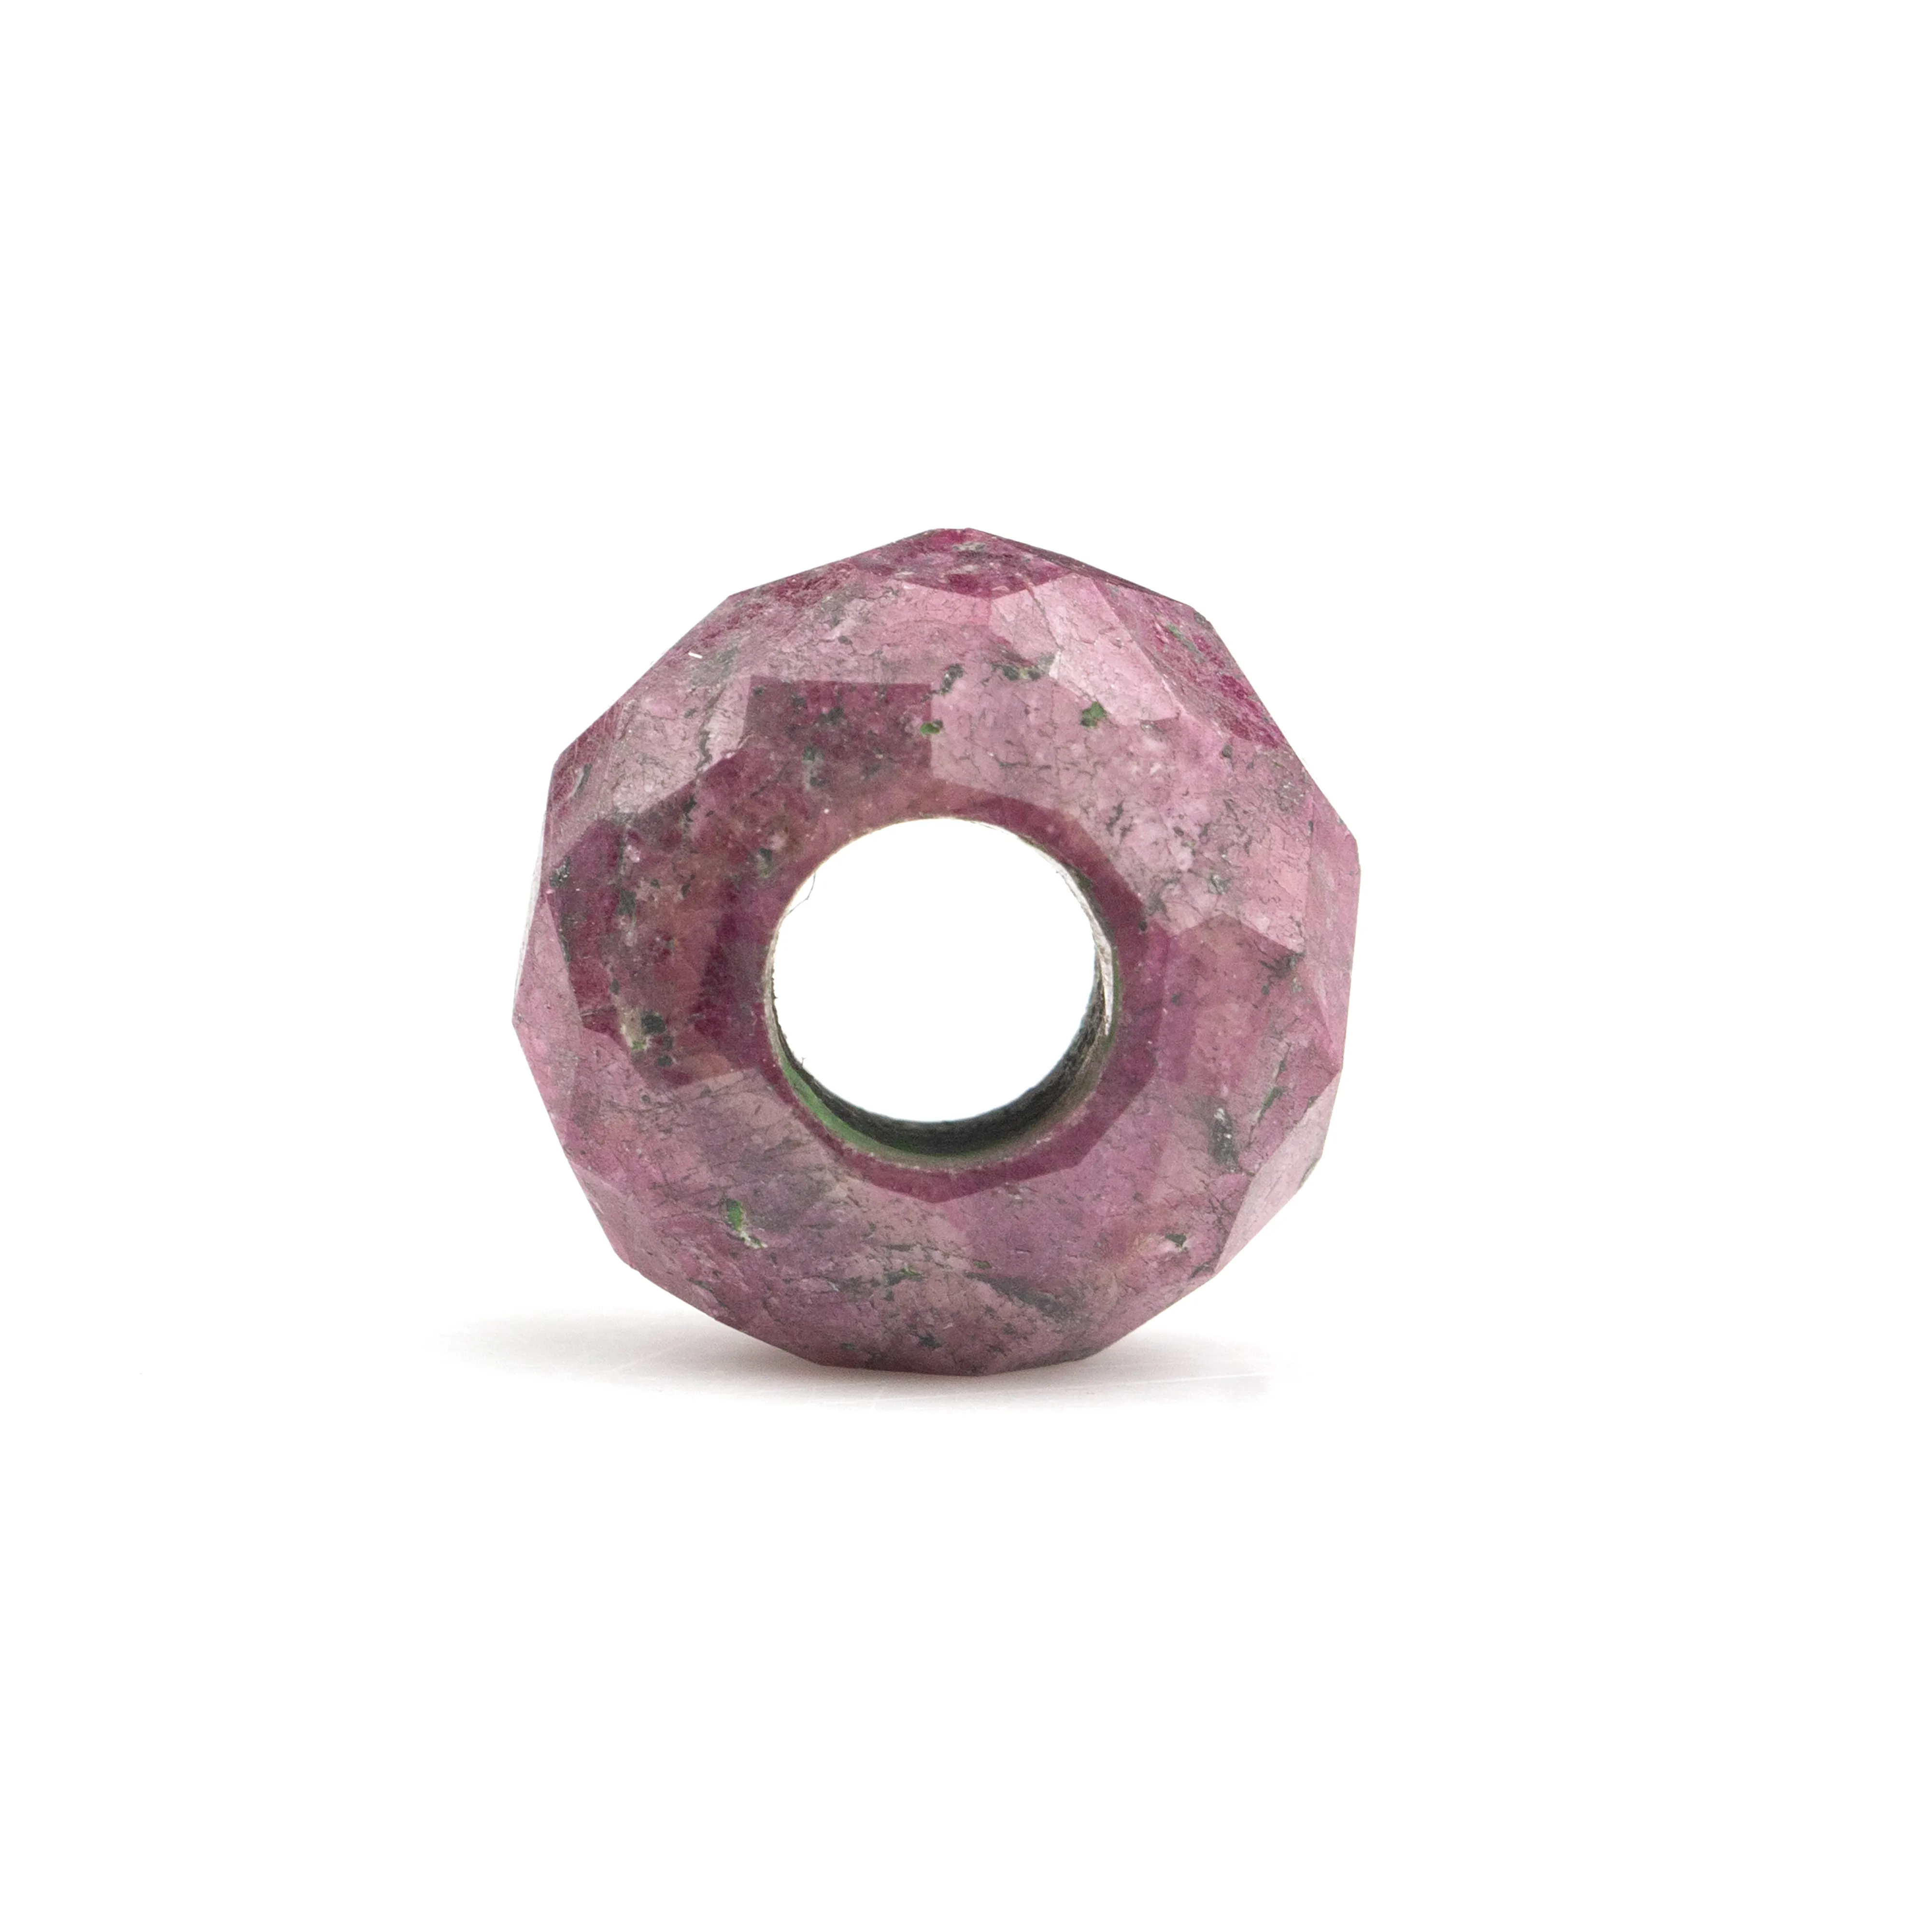 14x8mm naturale lucido naturale indiano rosa rubino forma Rondelle liscio grande foro dimensioni perline di pietre preziose per fare gioielli